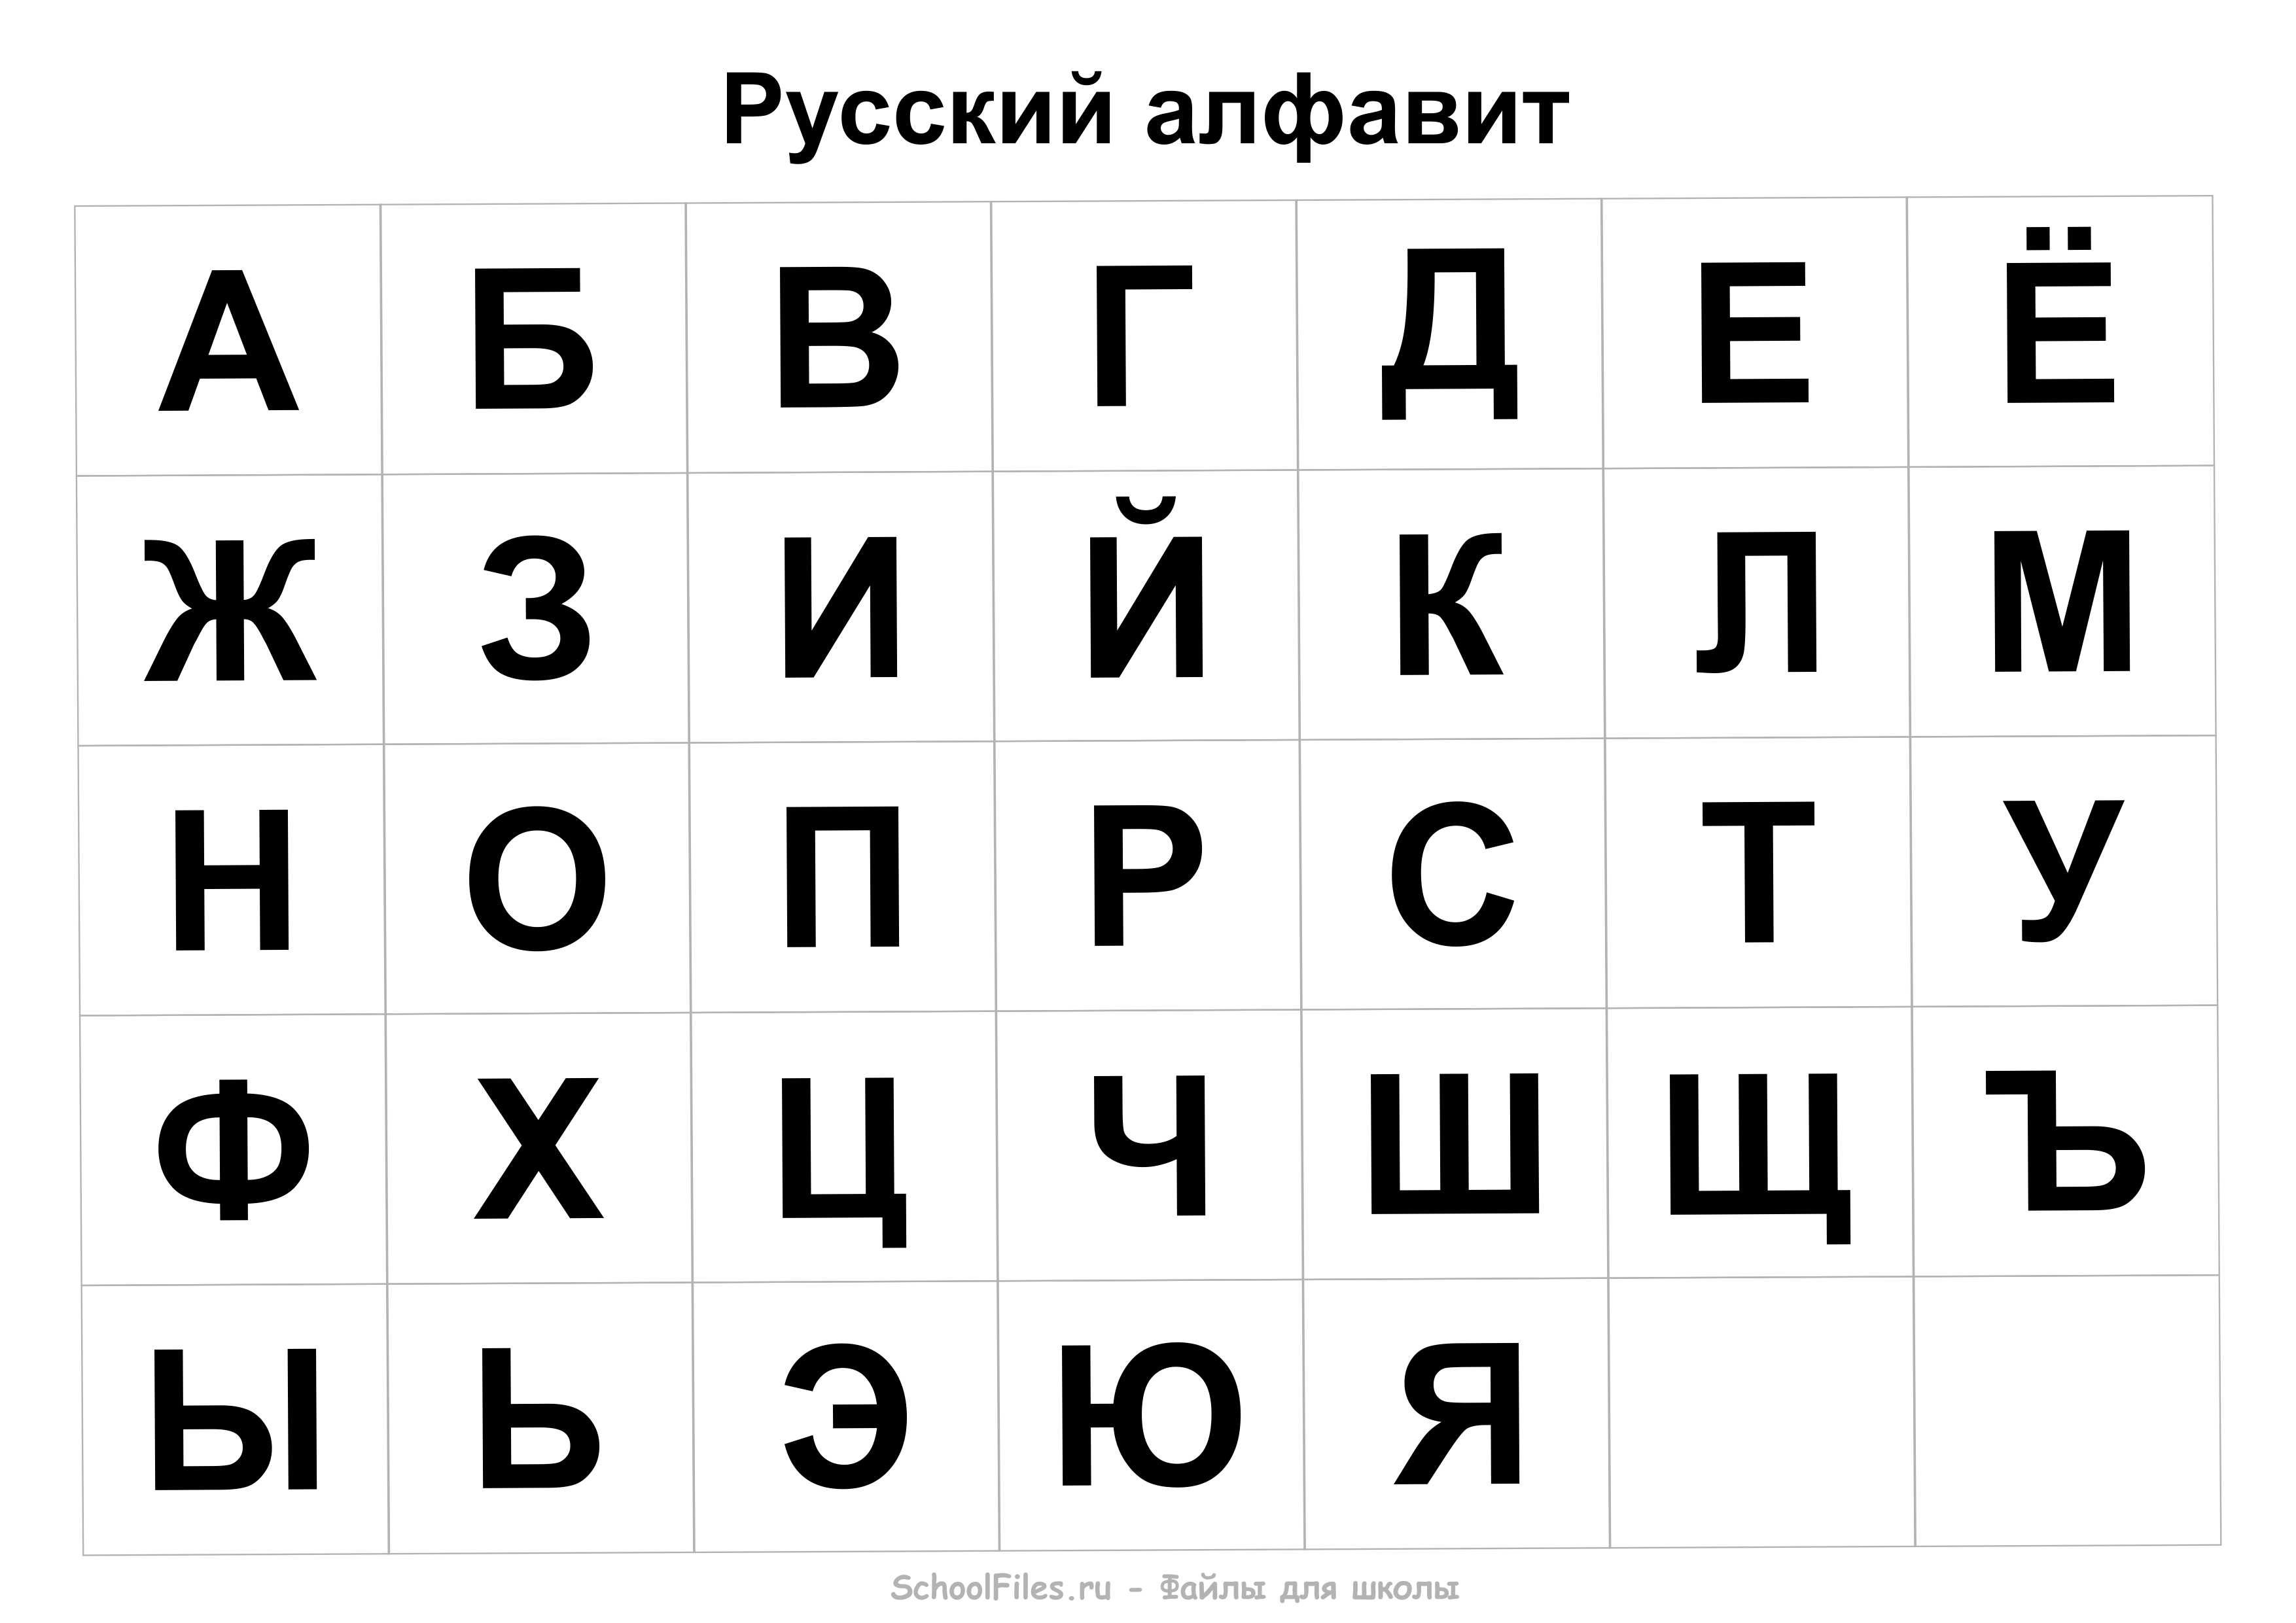 Перевод на русский язык по фото онлайн бесплатно